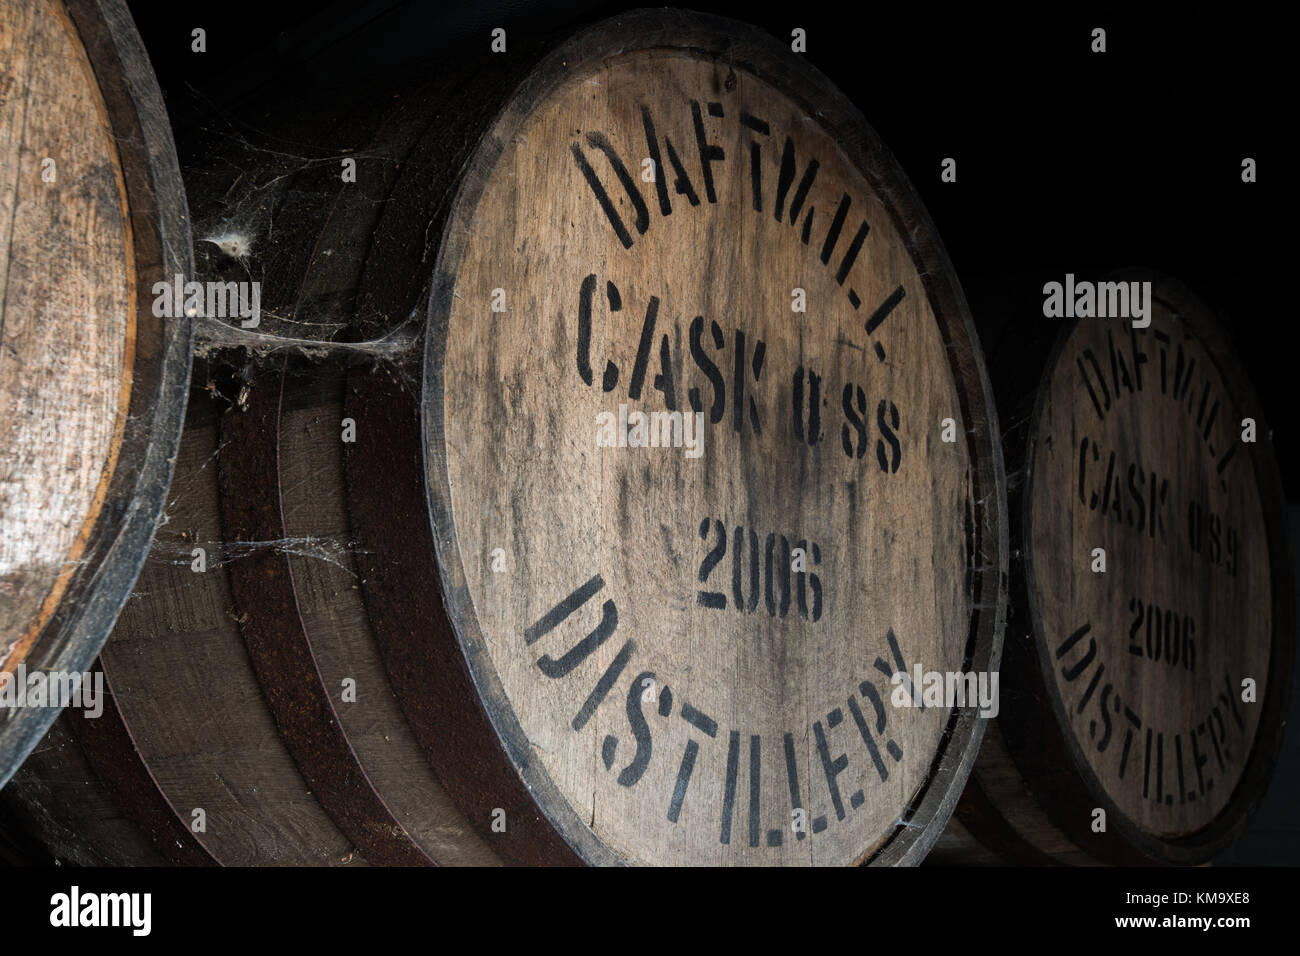 Daftmill Brennerei, von cupar, Fife, Schottland ist eines der neuesten Destillerien in Schottland, mit Gerste aus der eigenen Landwirtschaft und Wasser aus Ihrer artesischen Stockfoto